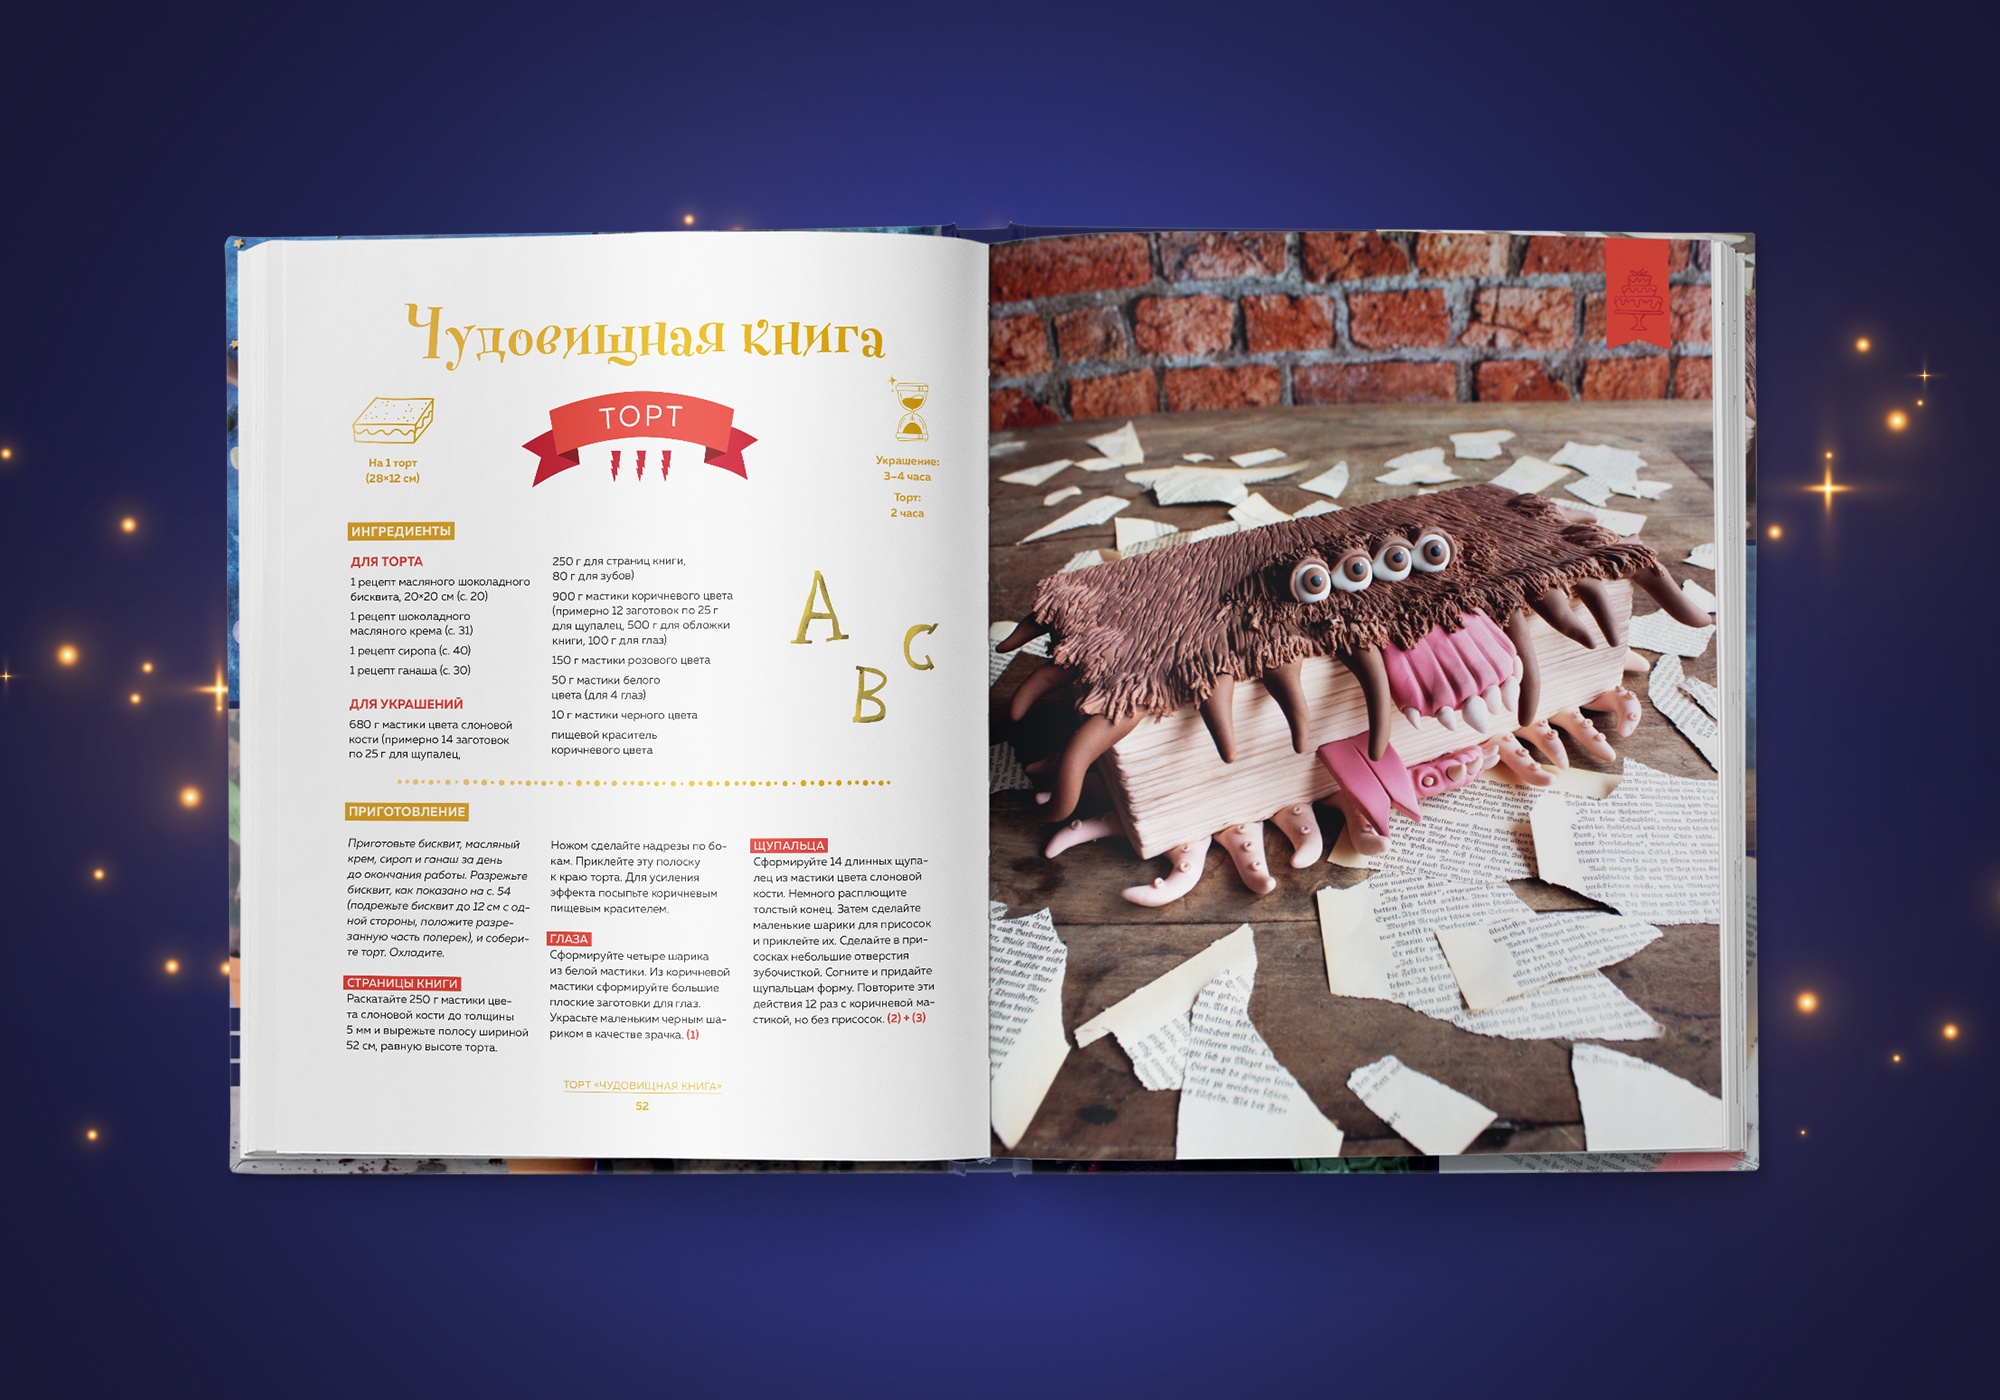 Открылся предзаказ кулинарной книги «Школа выпечки для поттероманов» 2